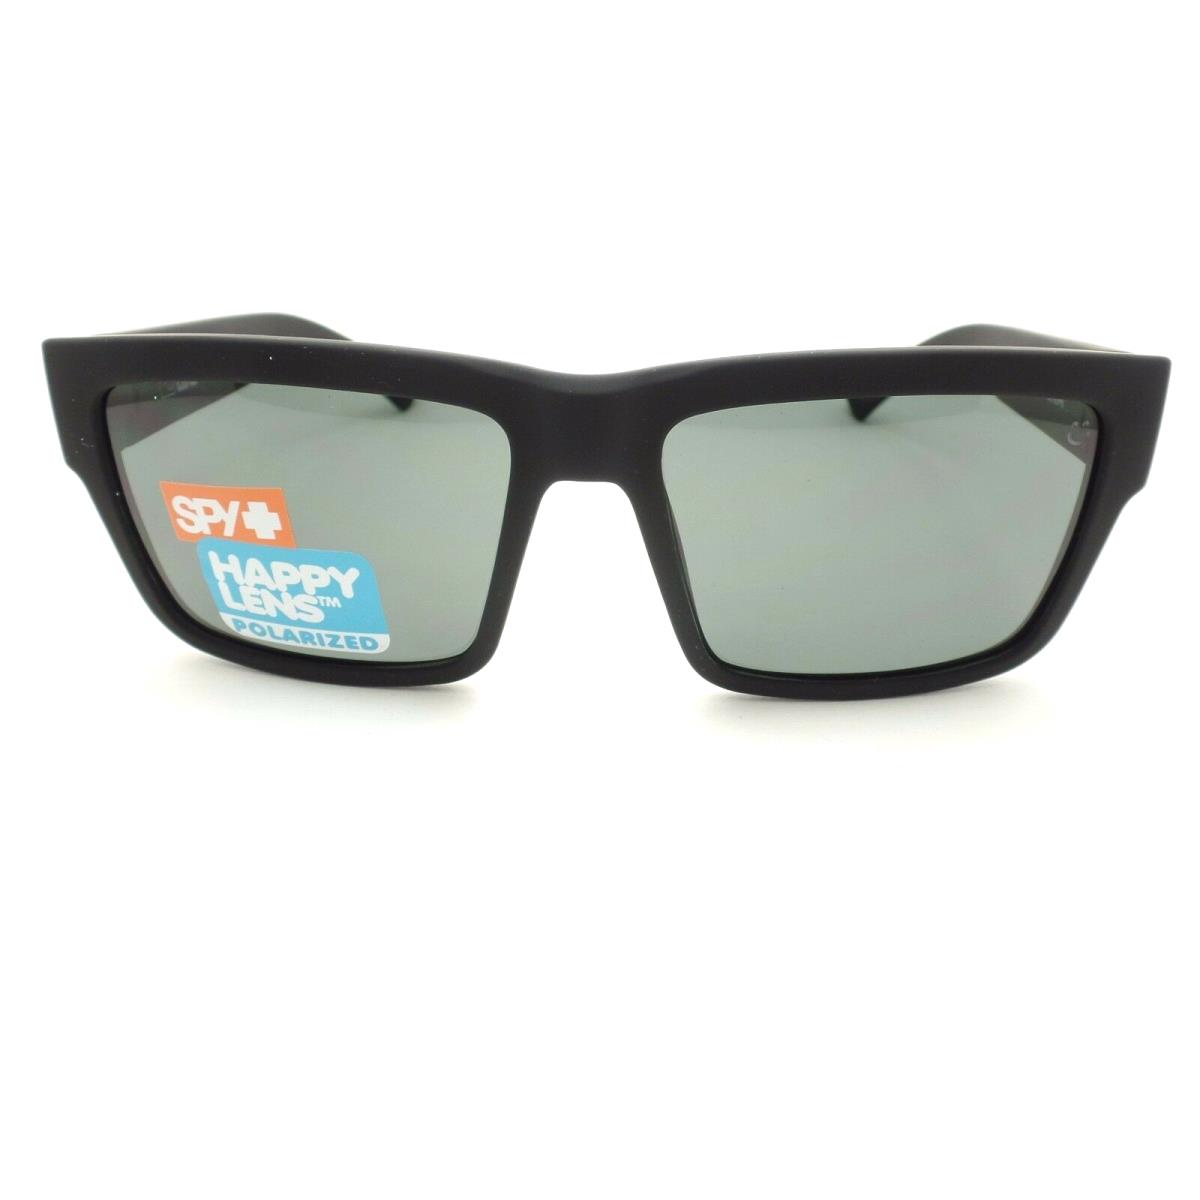 SPY Optics sunglasses Montana - Black Frame, Gray Lens